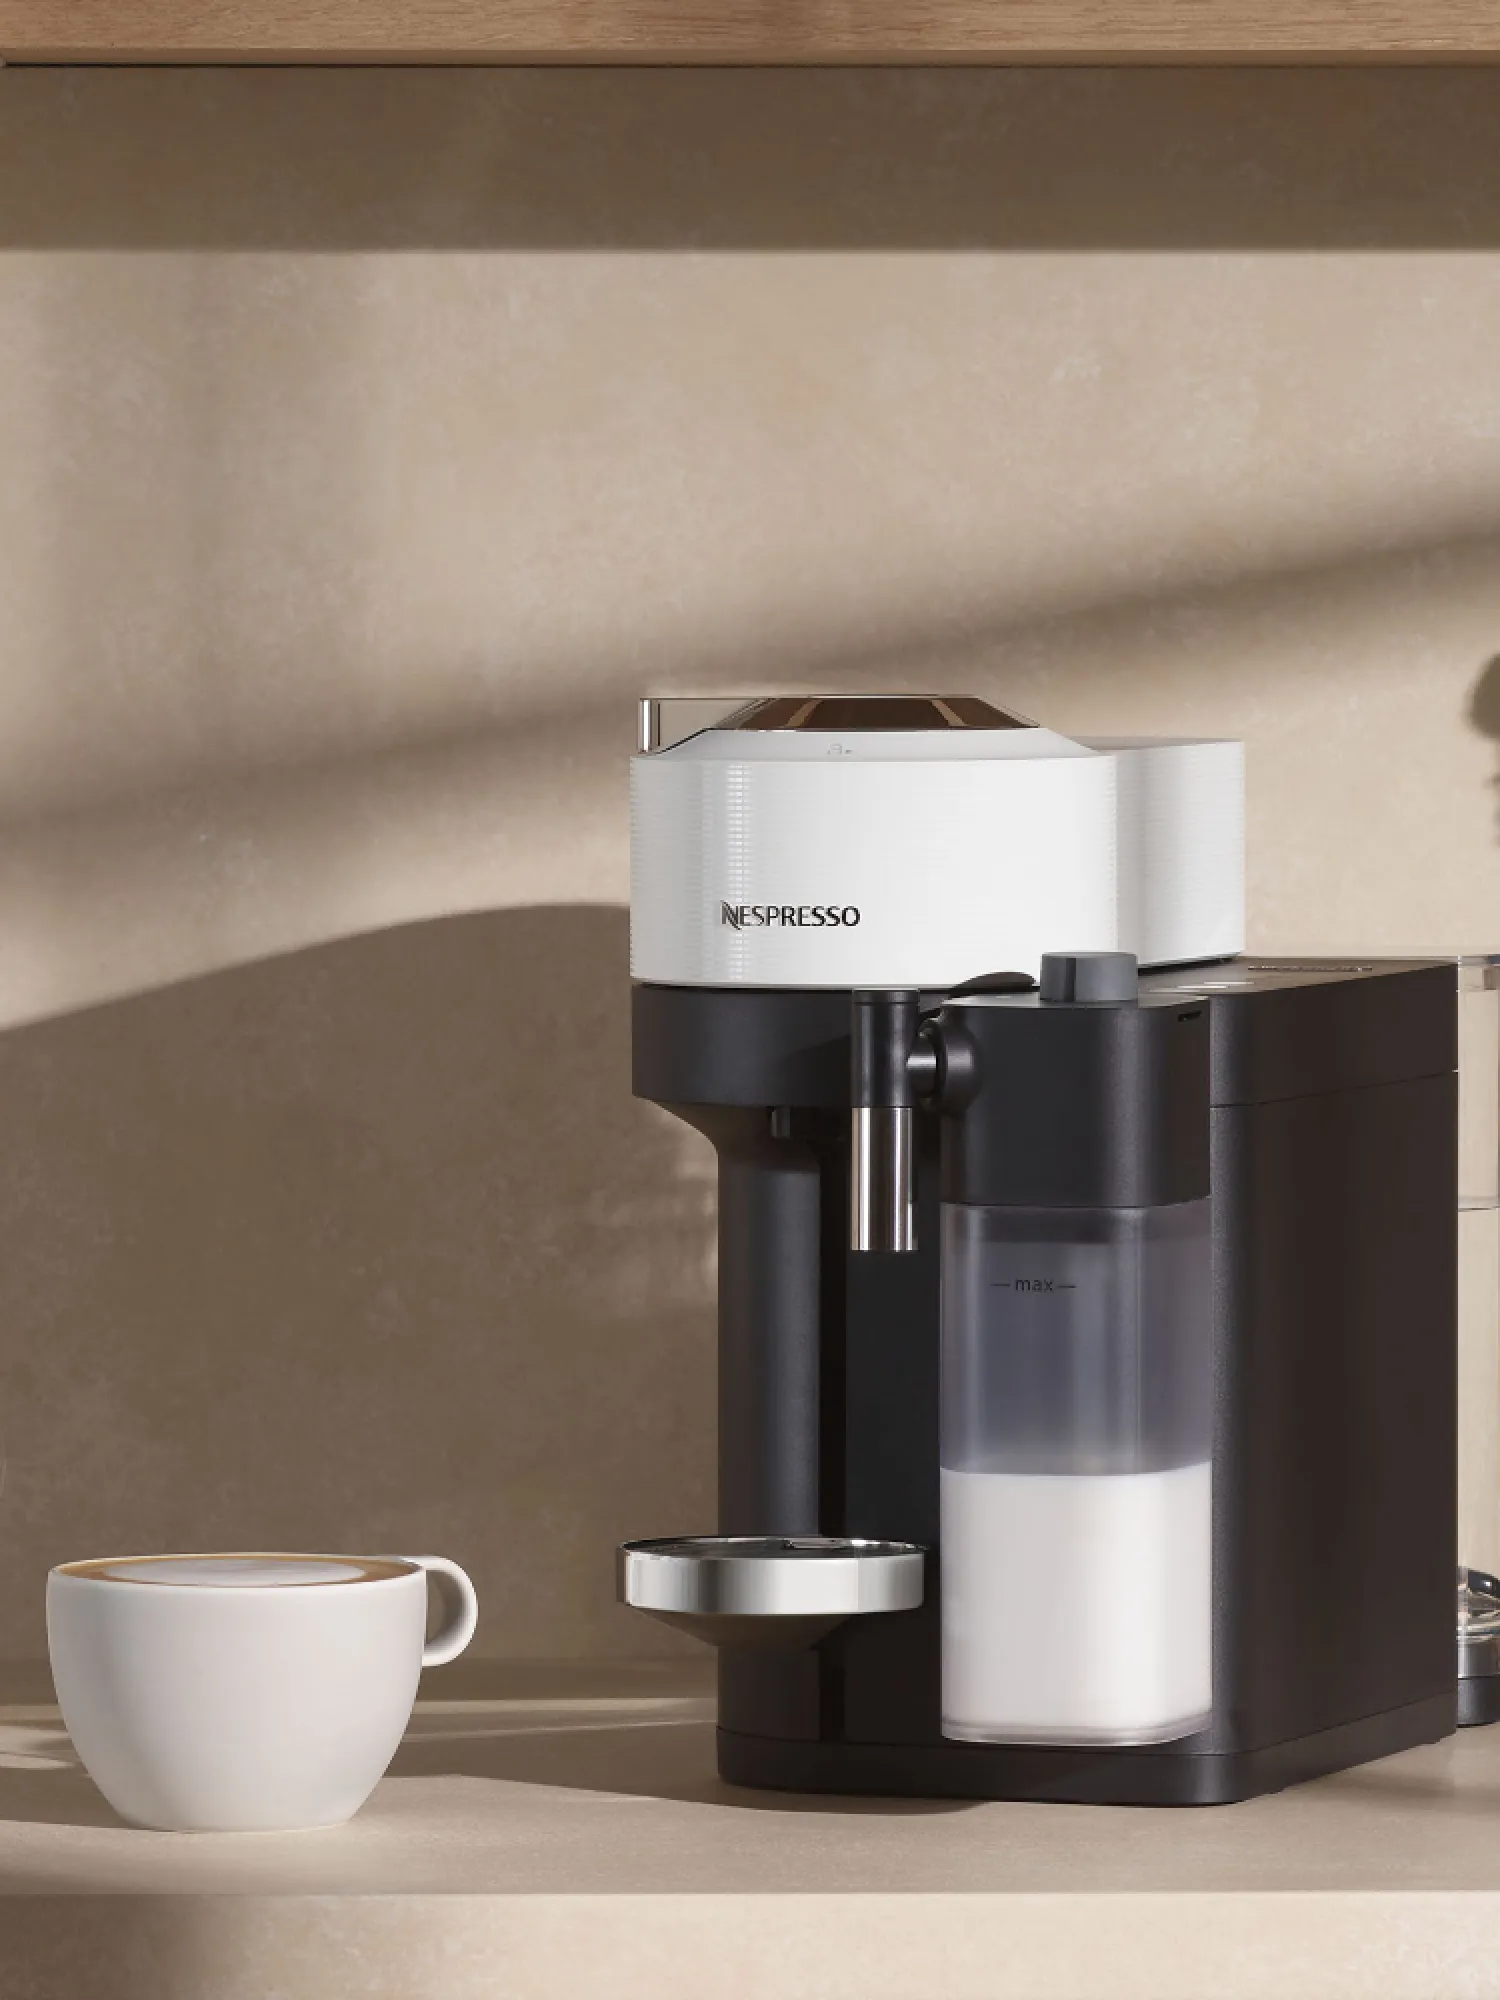 miste dig selv Konsultation frisk Vertuo » Gå på opdagelse i vores kaffeunivers | Nespresso